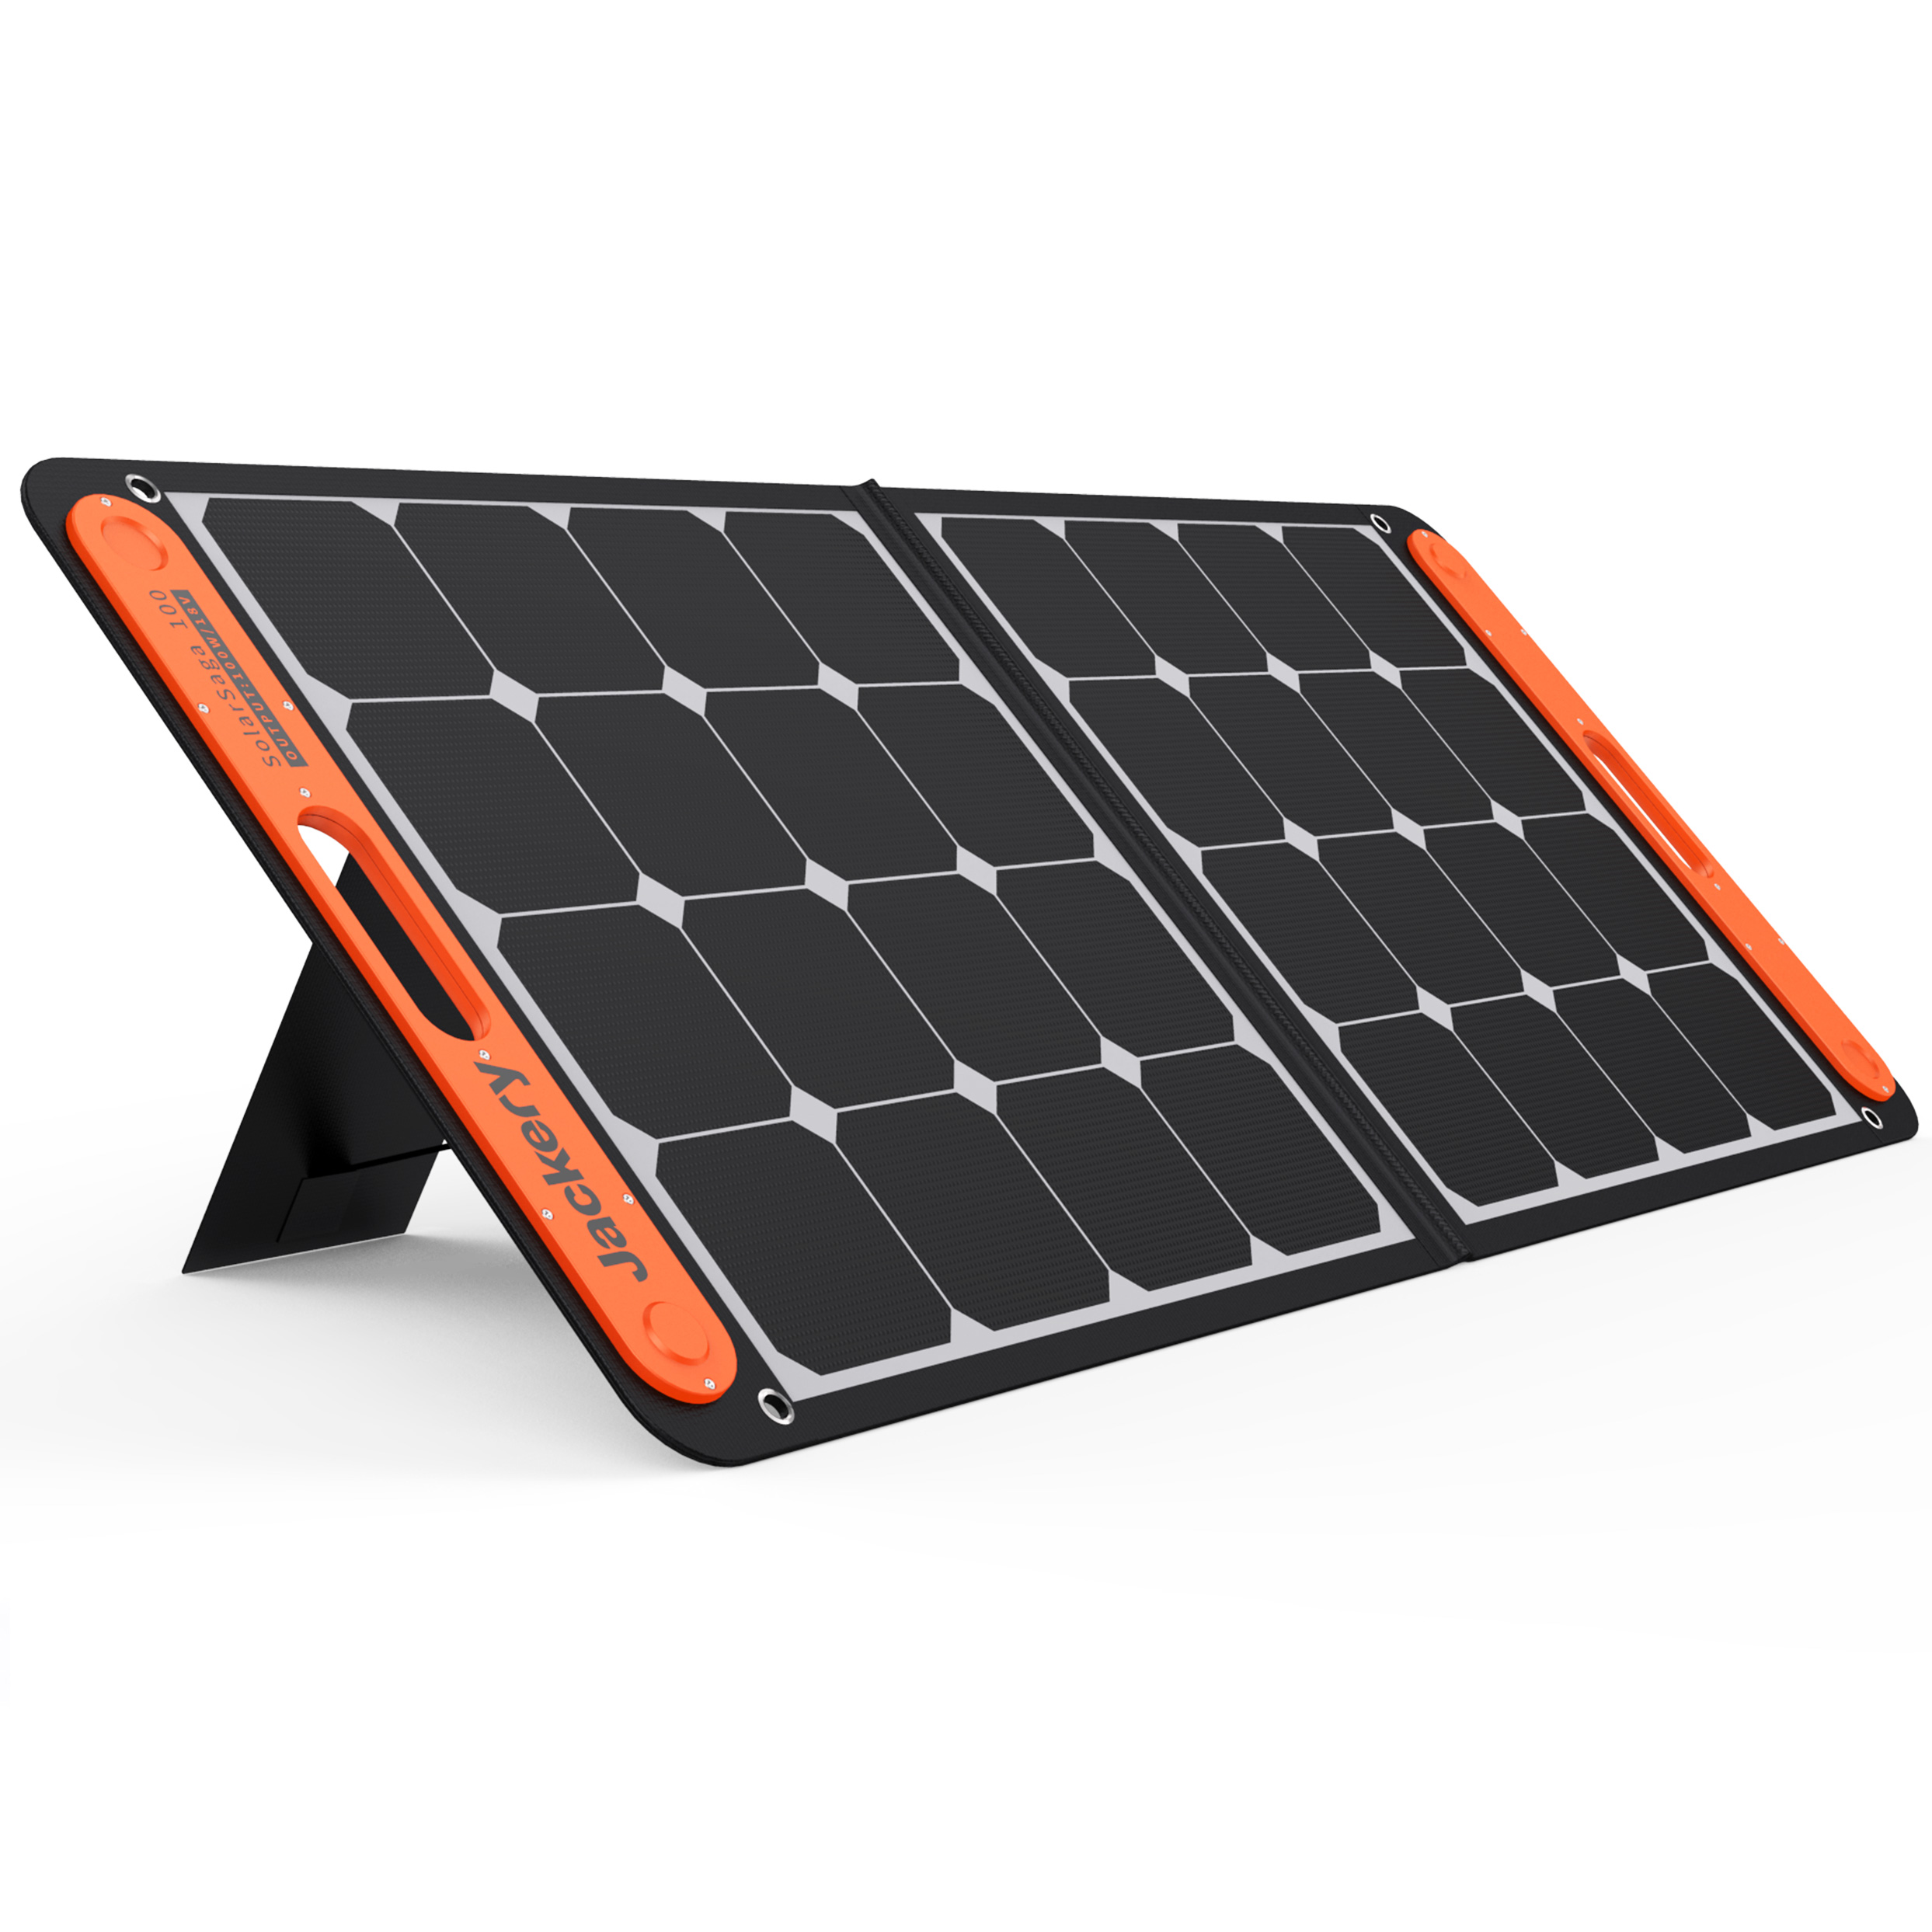 Отзывы портативная солнечная батарея Jackery SolarSaga 100W в Украине